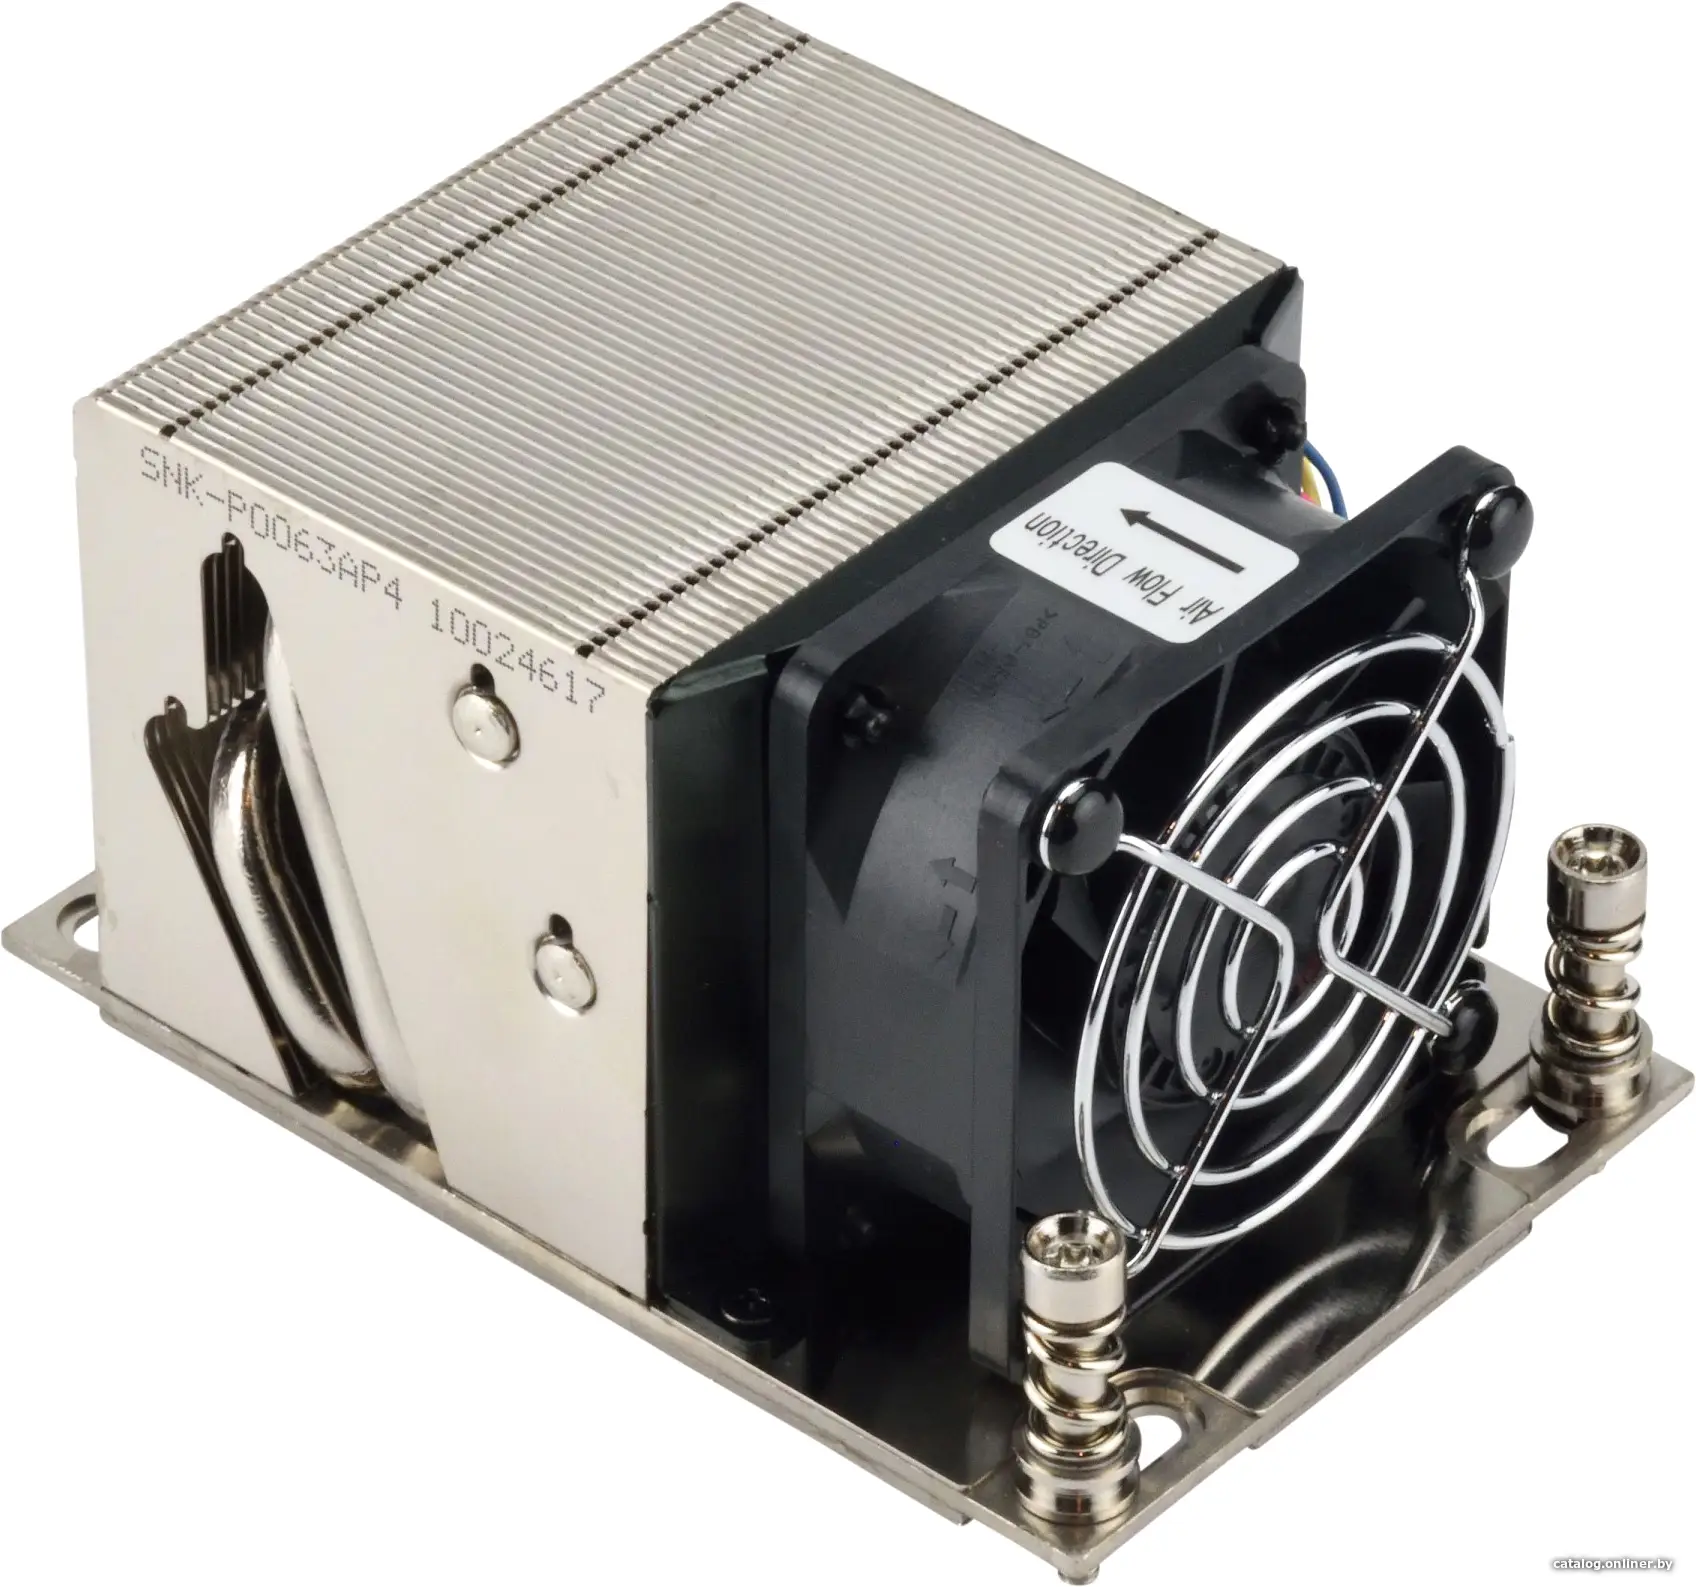 Купить Радиатор SuperMicro SNK-P0063AP4 (2U Active CPU Heat Sink for AMD Socket SP3), цена, опт и розница